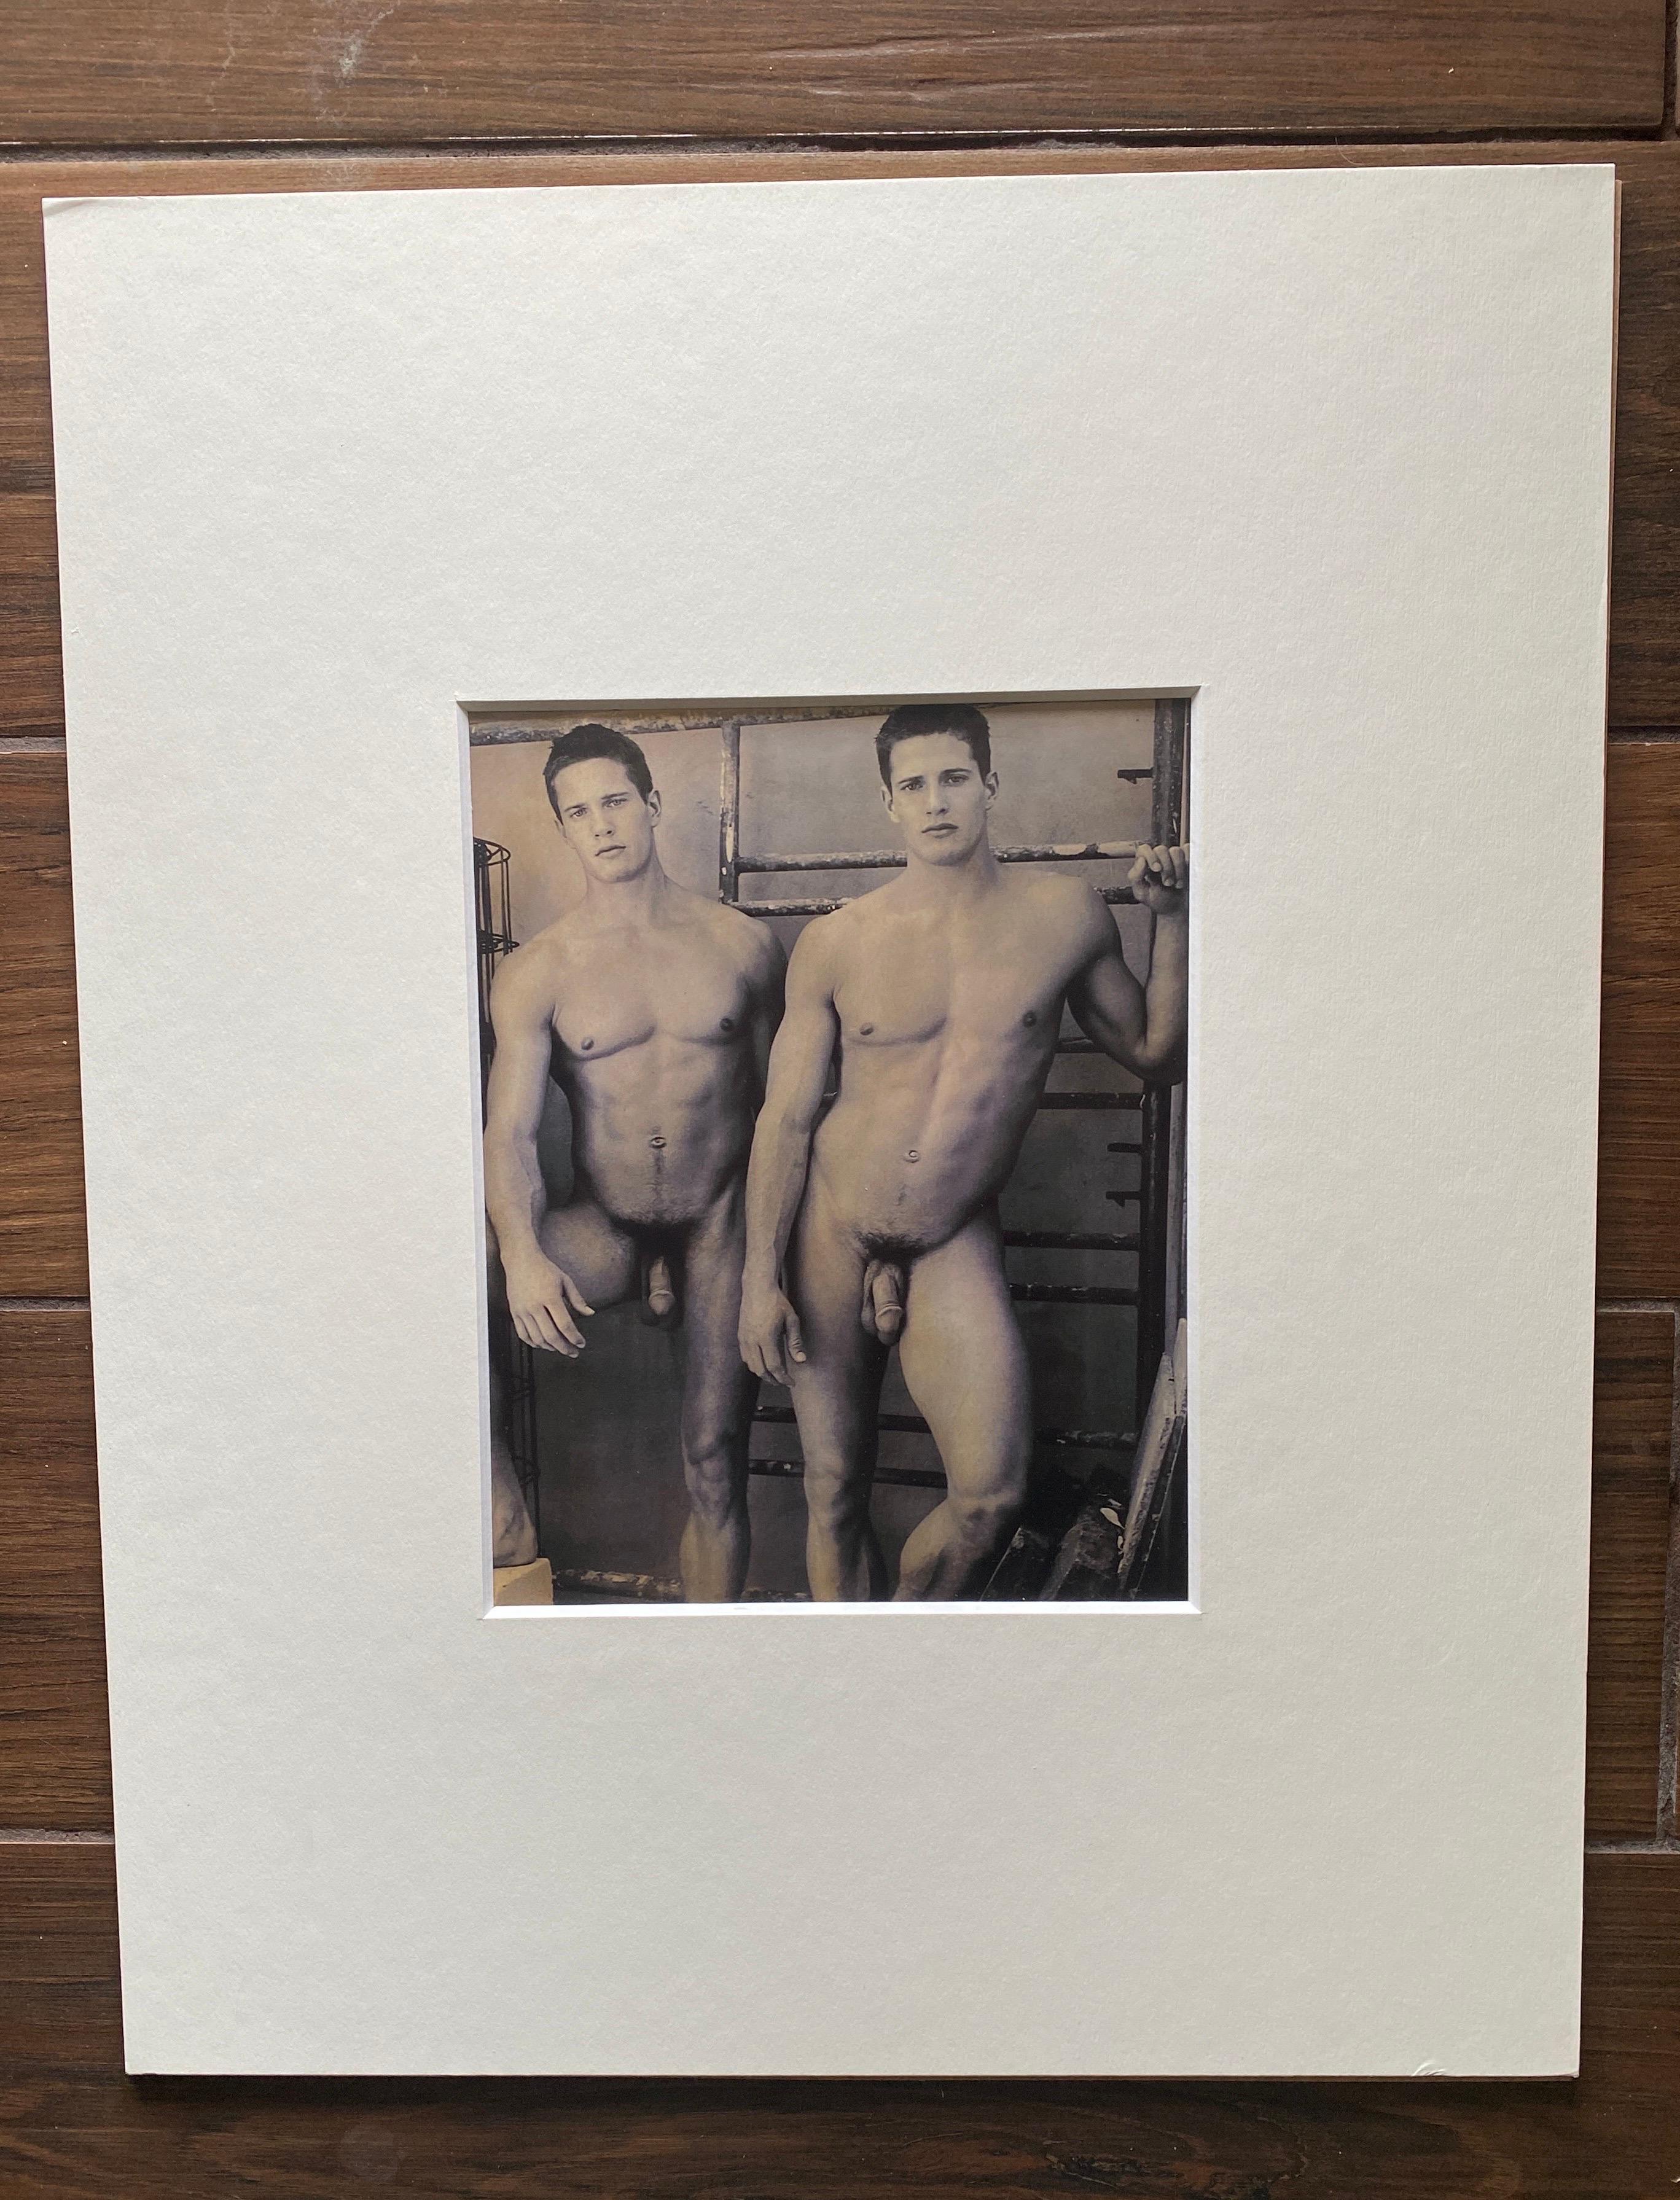 Vendemos 4 imágenes de los gemelos Carlson, Lane y Kyle. Lo que sabemos: la serie de desnudos fue realizada por Bruce Weber en 2000. Se titulan 